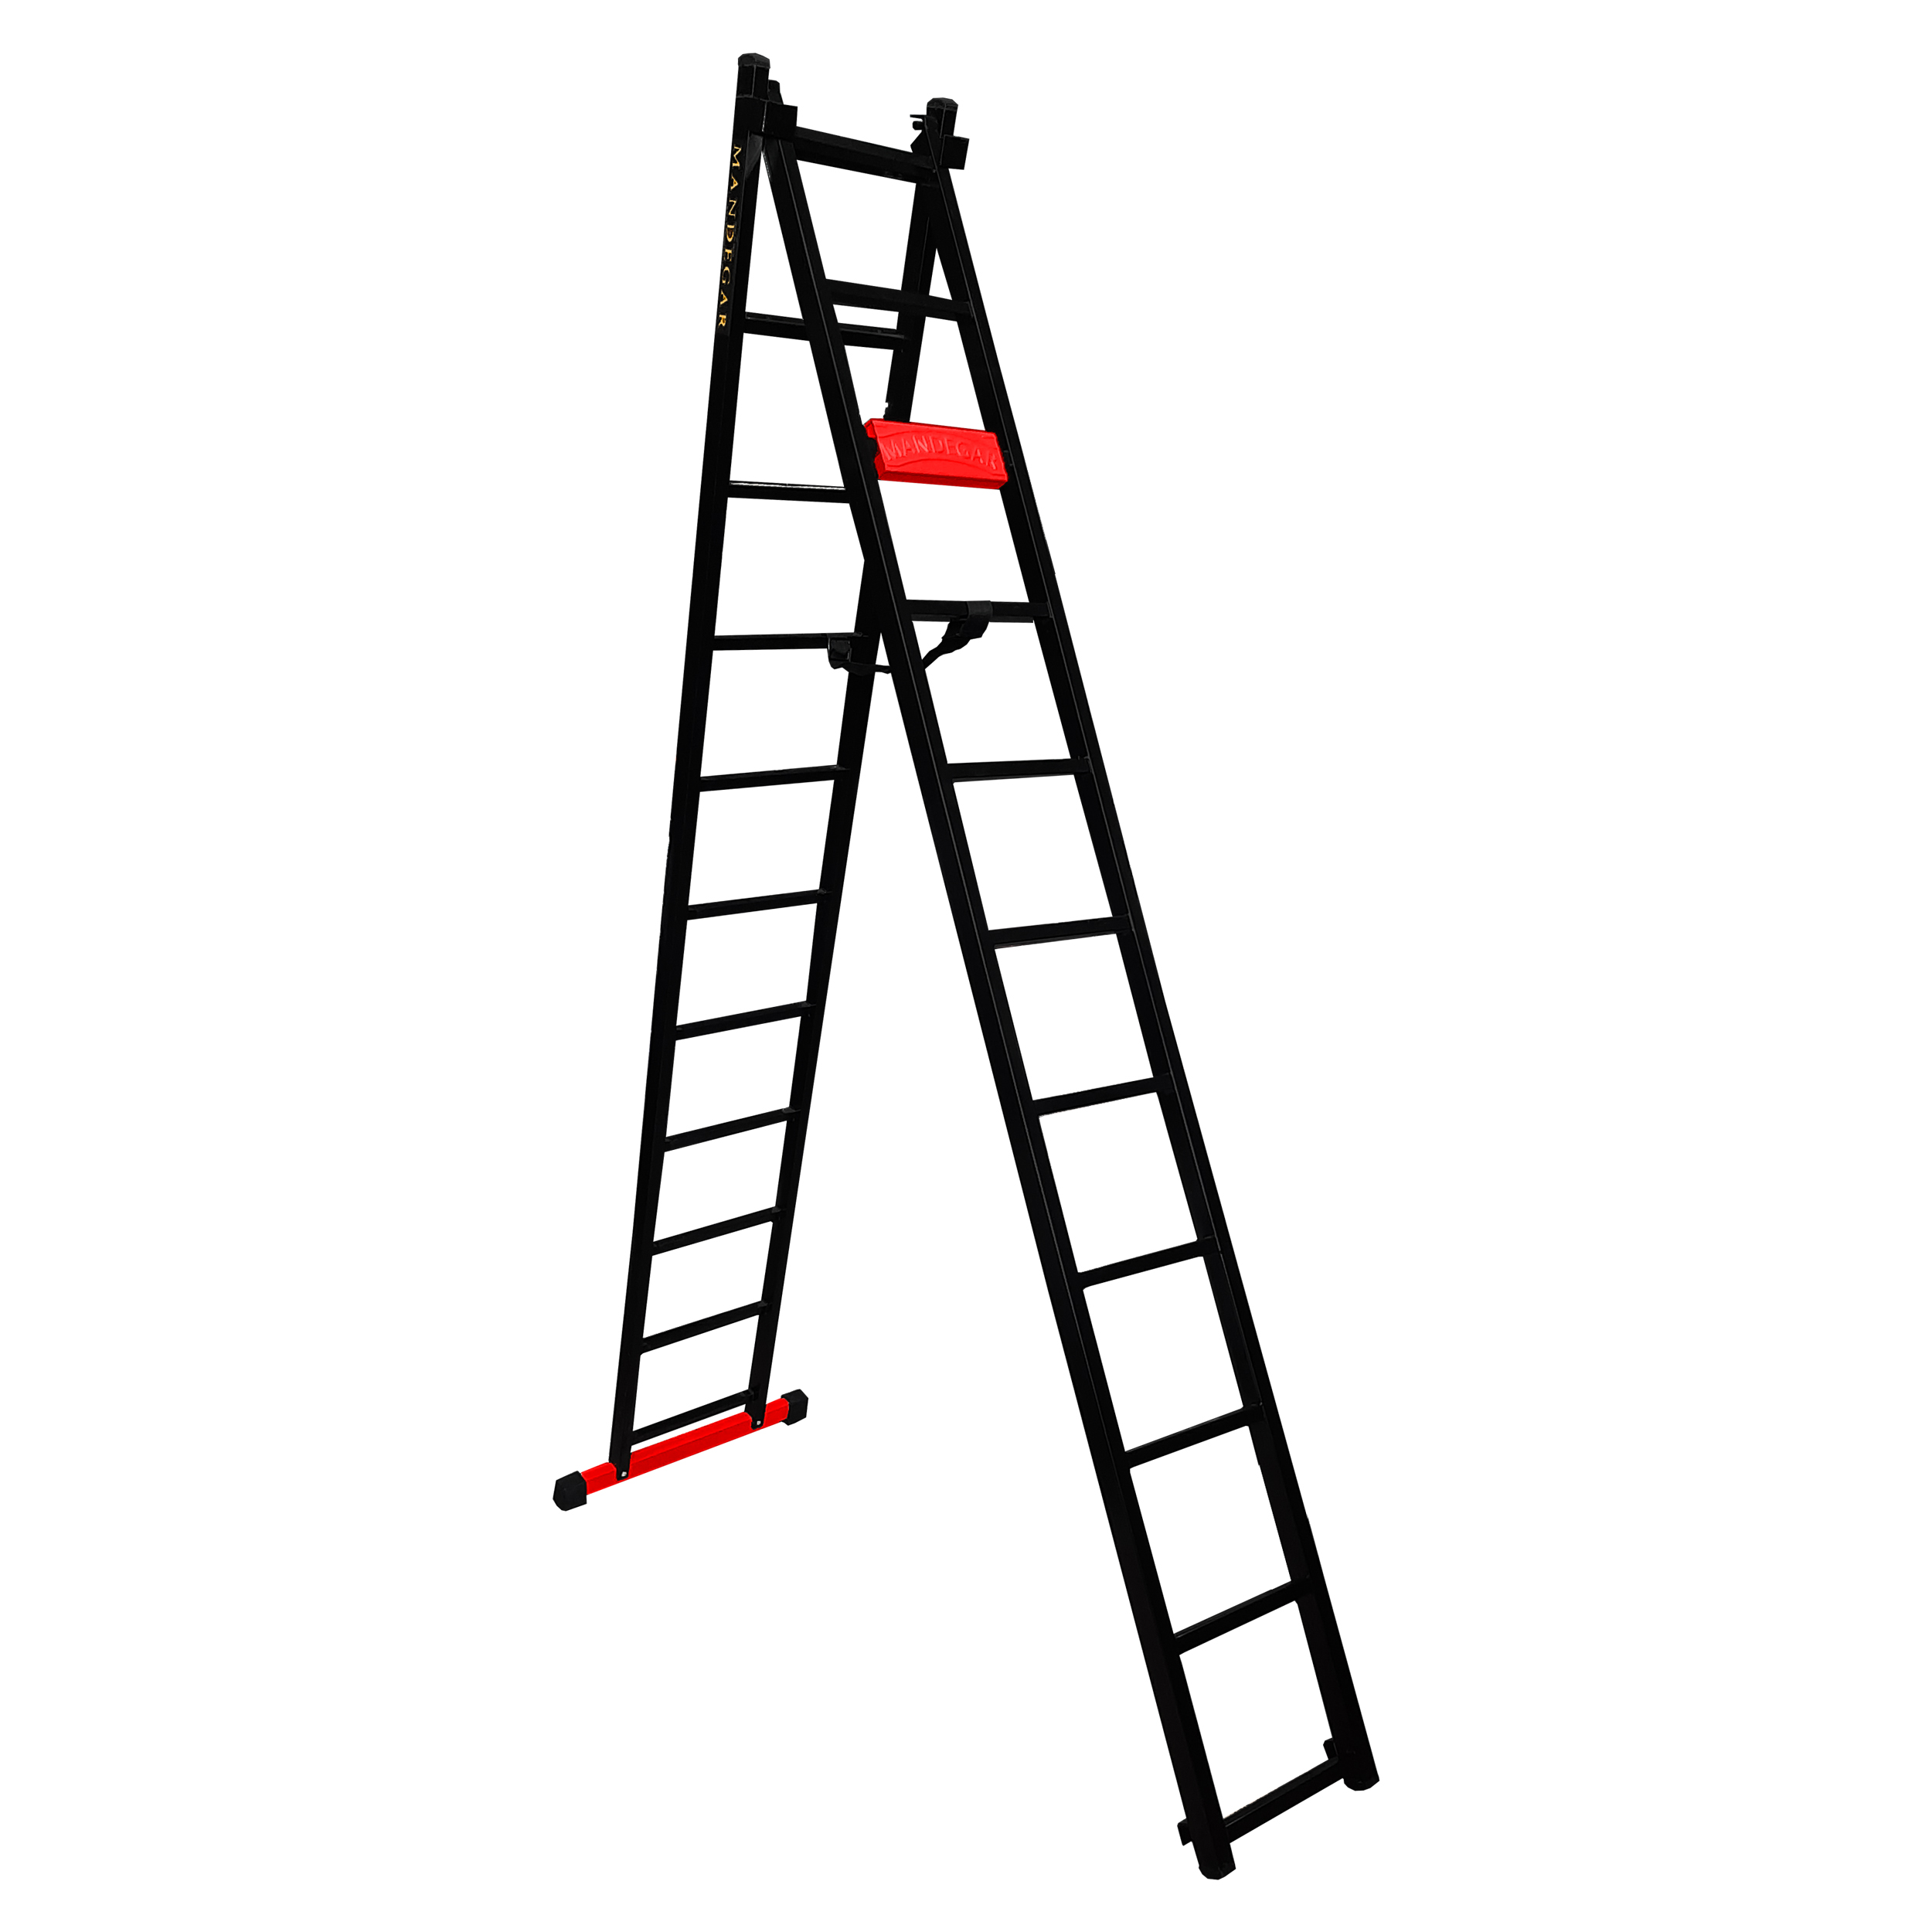 نکته خرید - قیمت روز نردبان 22 پله ماندگار مدل پارس به همراه پایه تعادل خرید